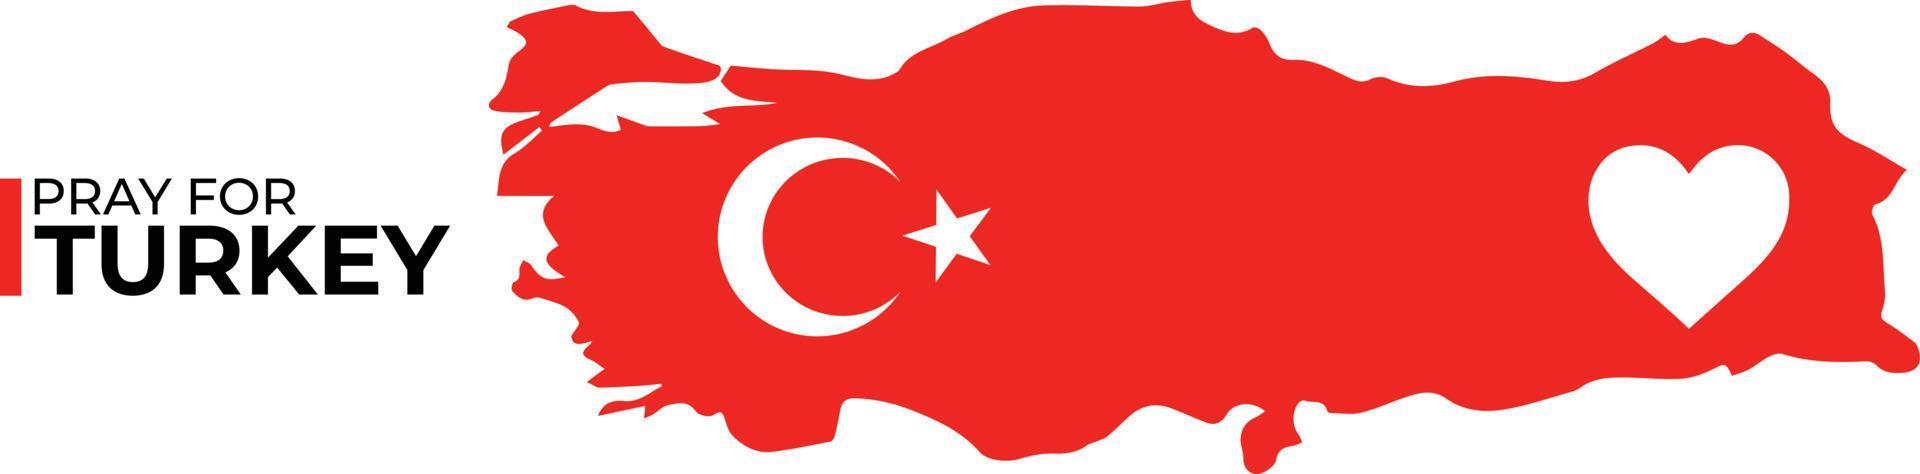 Oren por la gente de las víctimas del terremoto de Turquía. vector